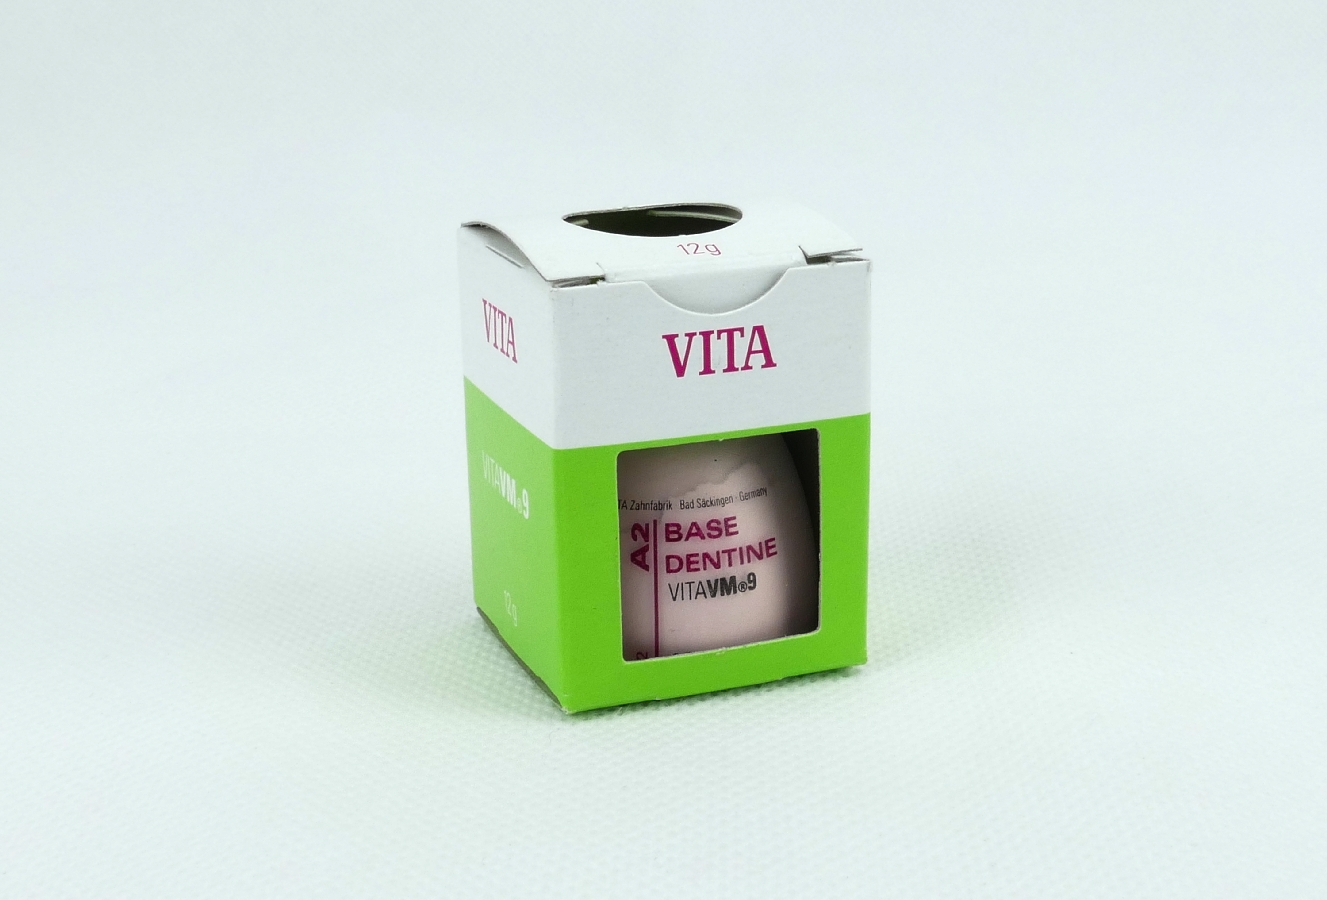 Vita VM9 Base Dentine A2 12g